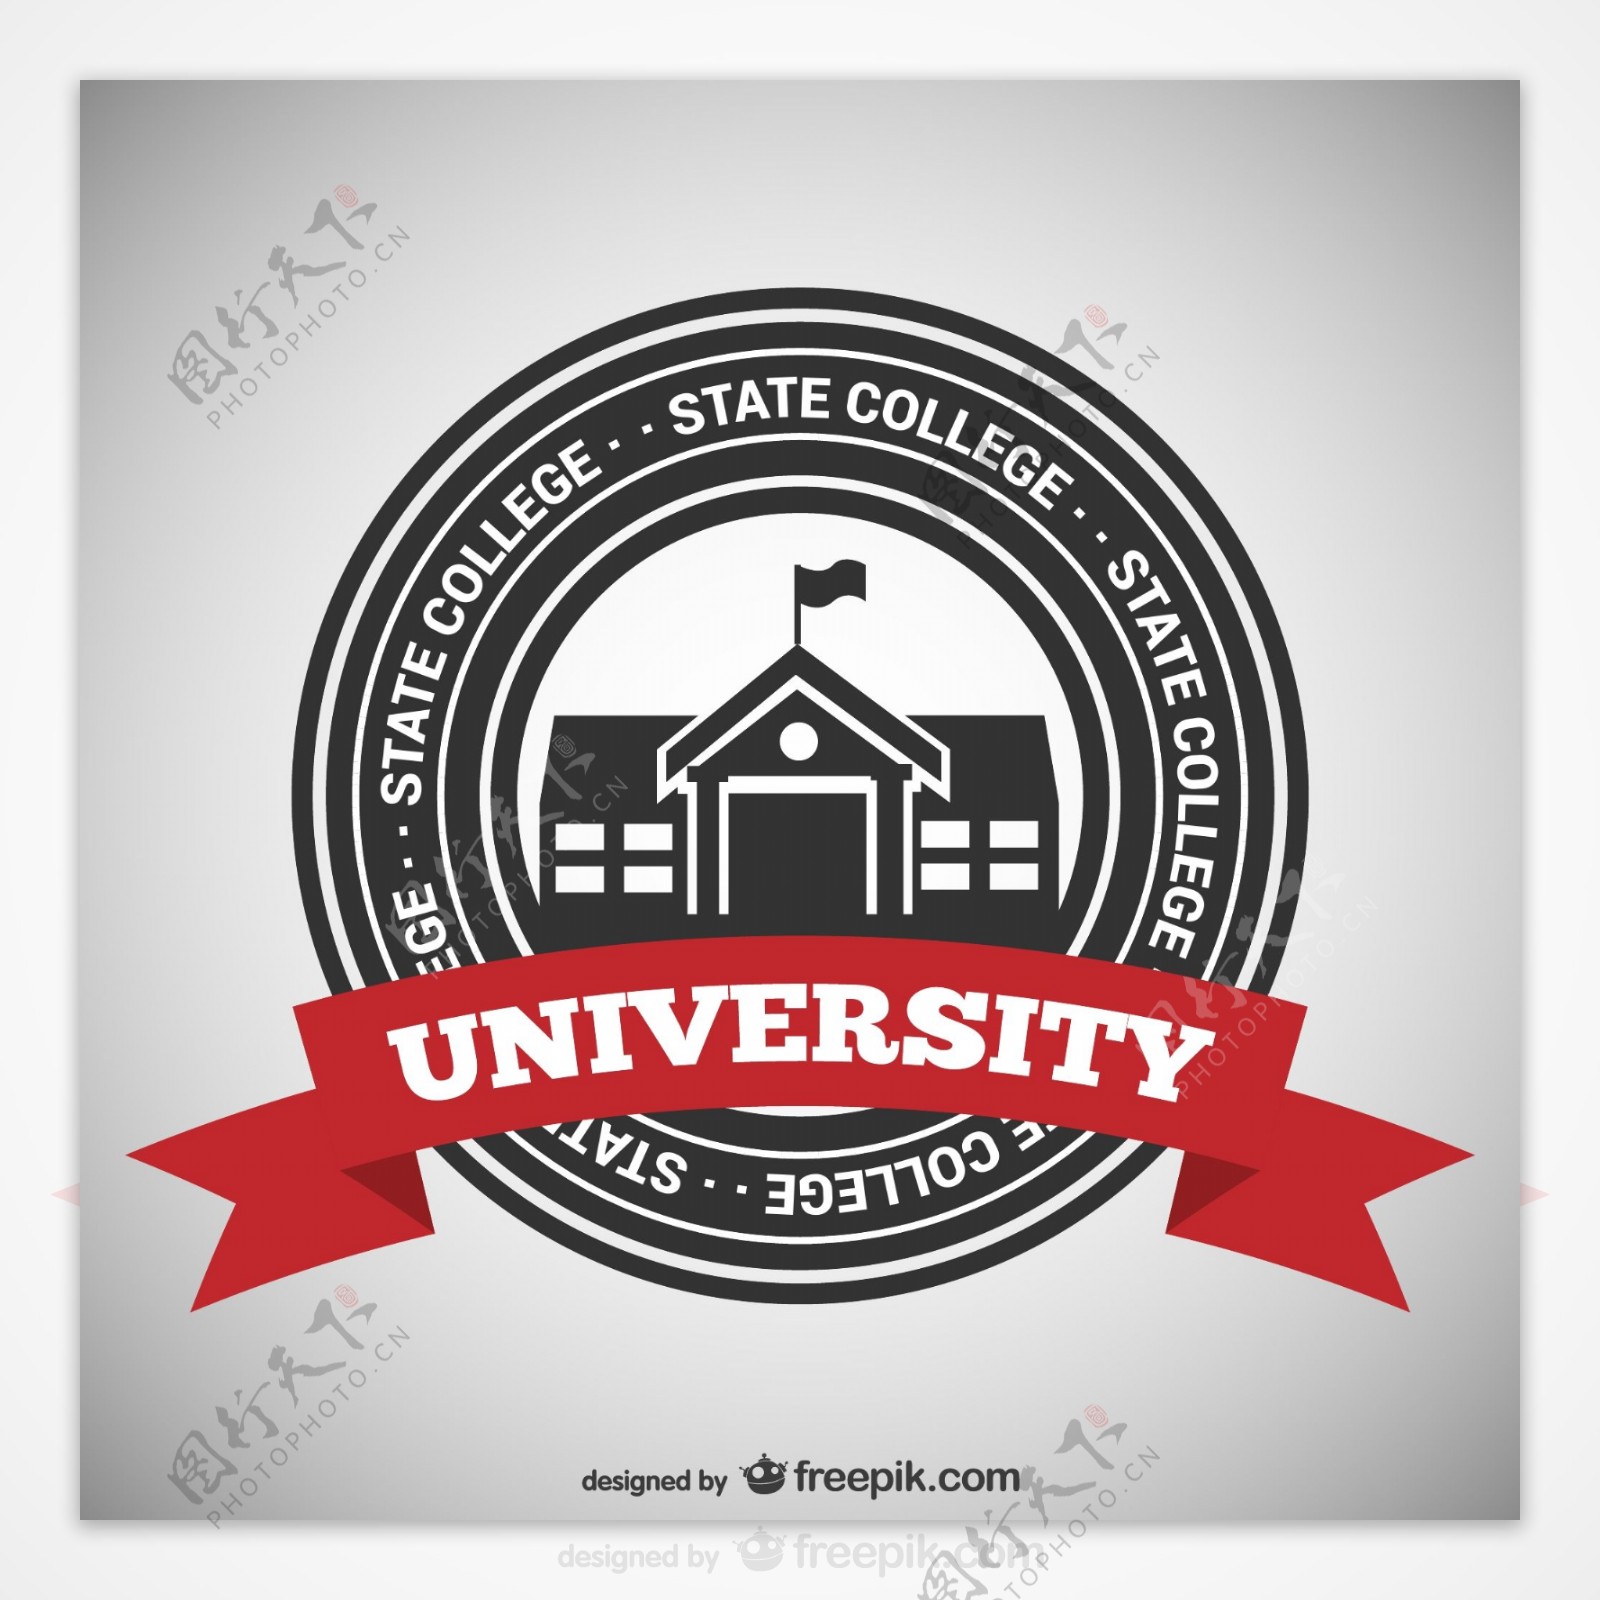 州立学院徽章